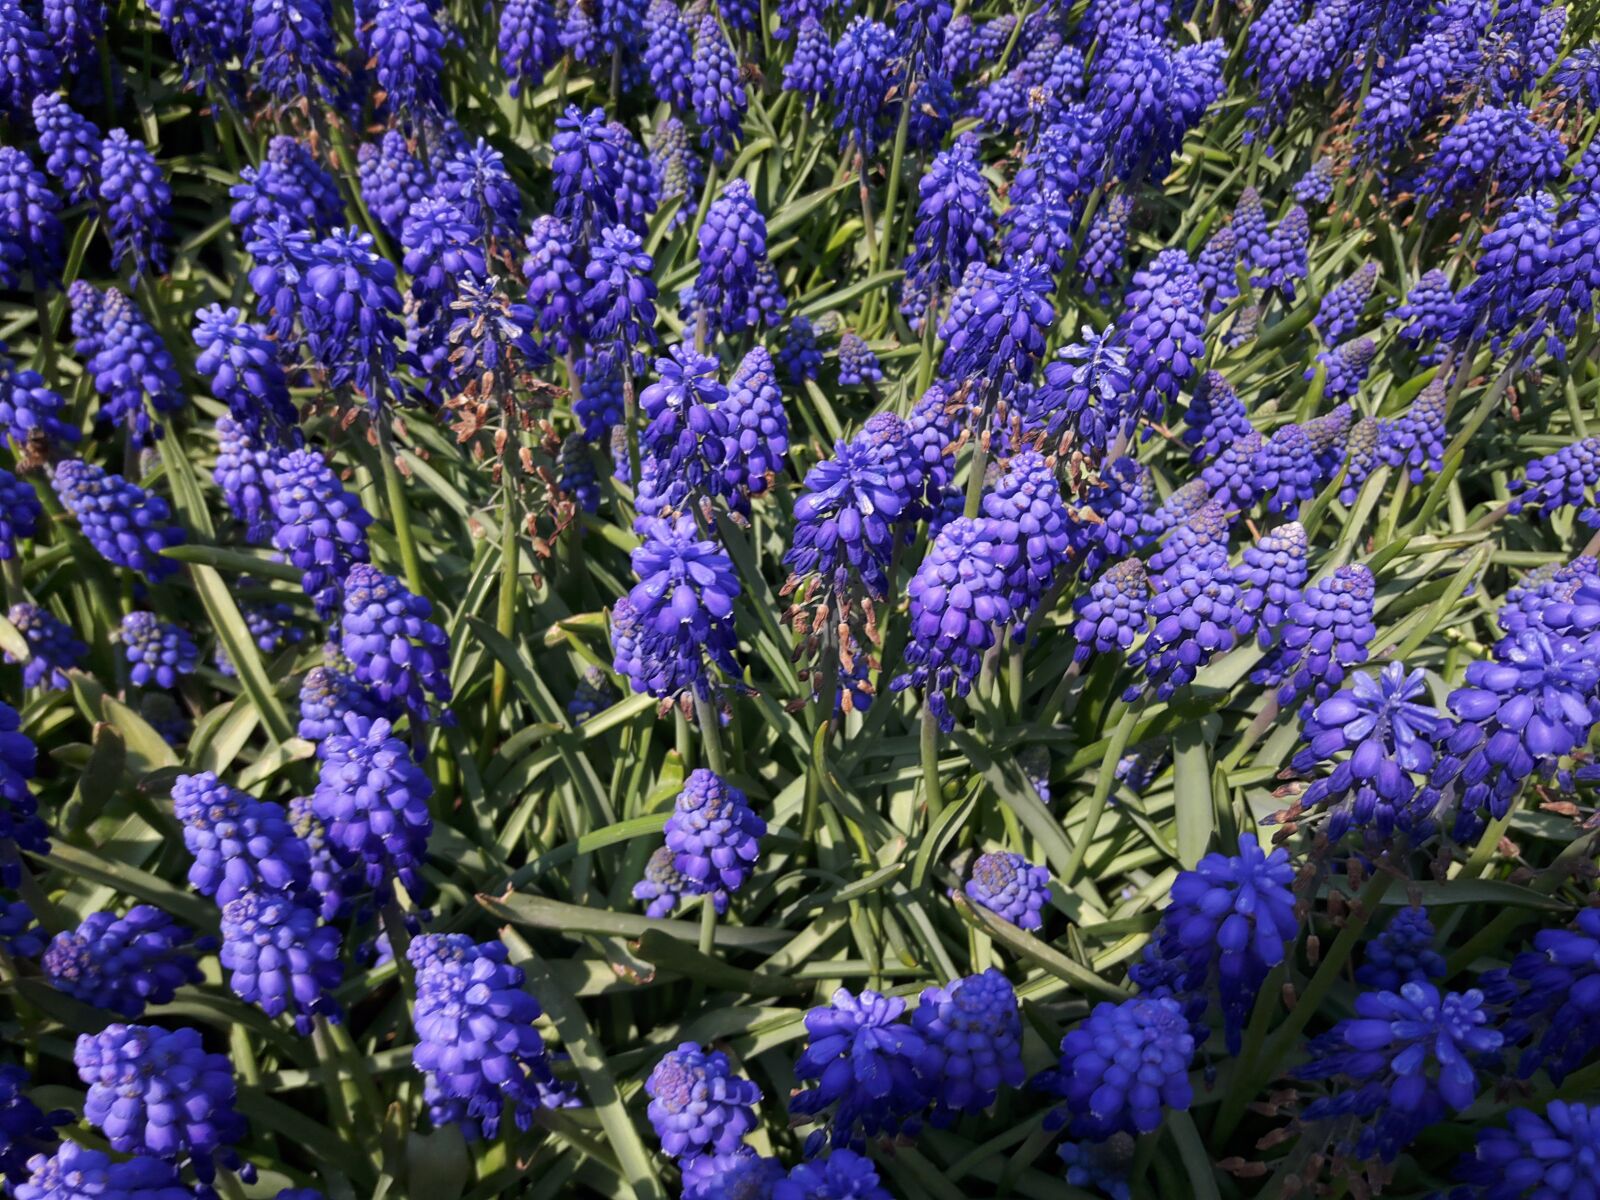 Samsung Galaxy A8 sample photo. Hyacinth, purple, garden photography